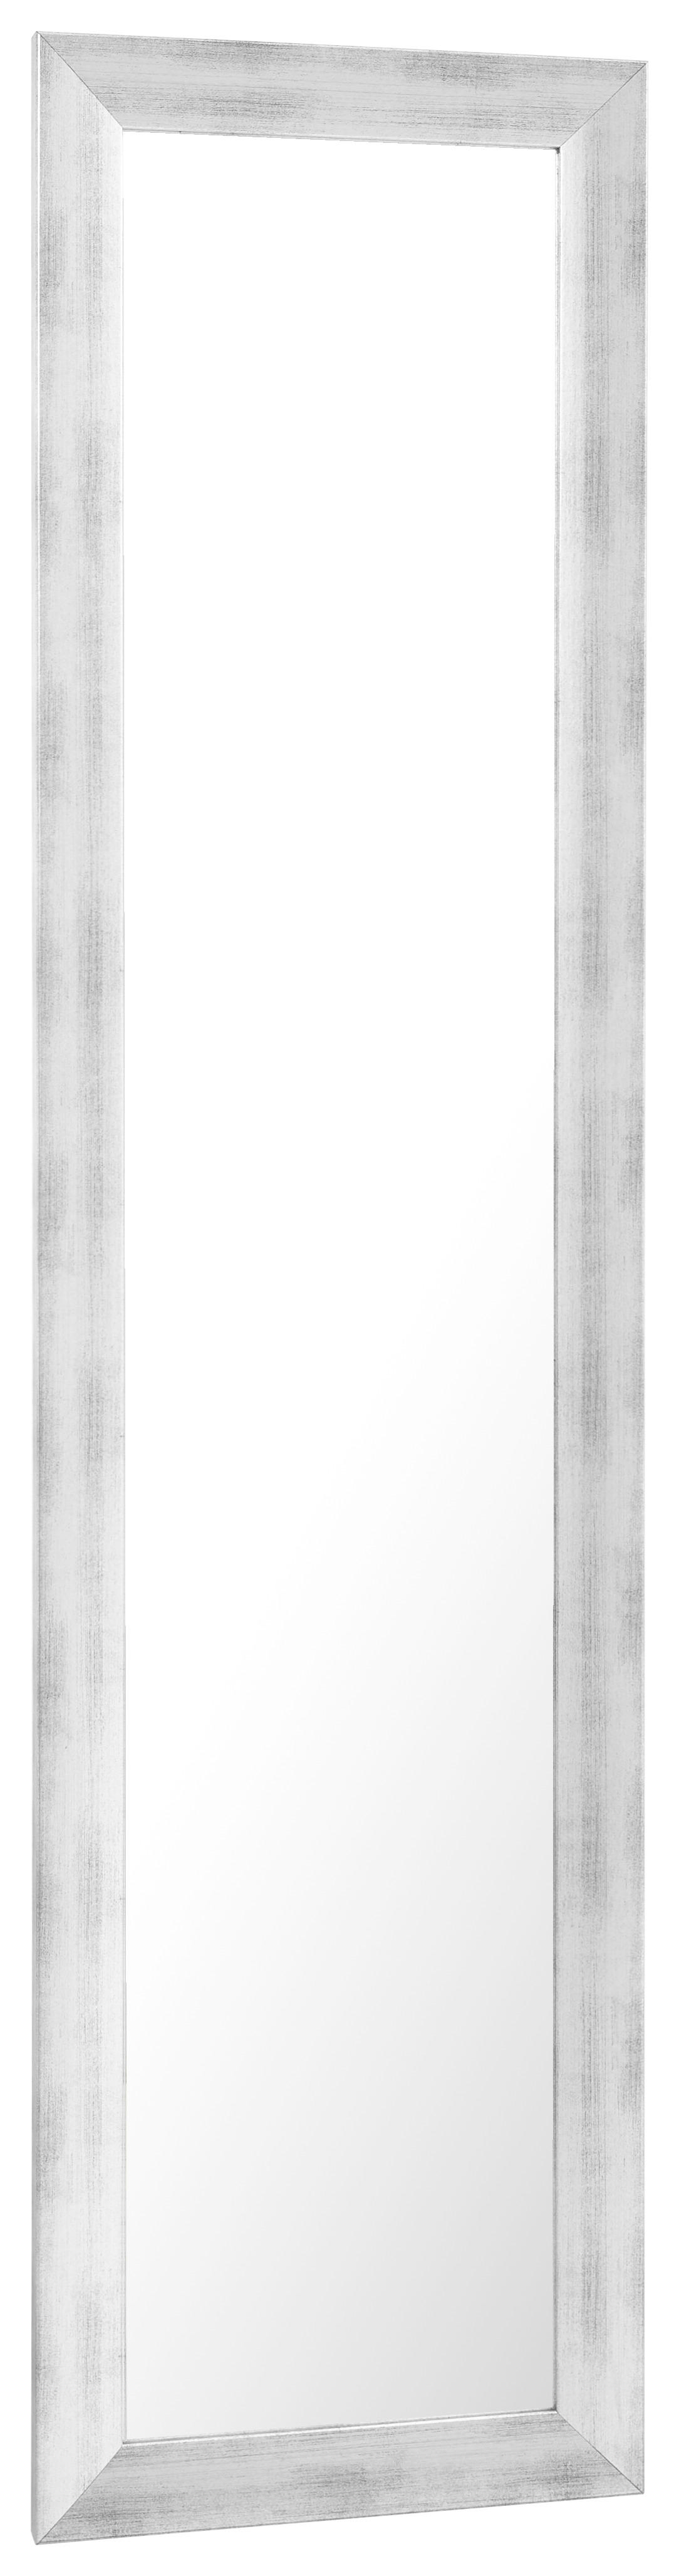 ZRKADLO 35/140/2 cm  - strieborná, Design, kompozitné drevo/sklo (35/140/2cm) - Carryhome